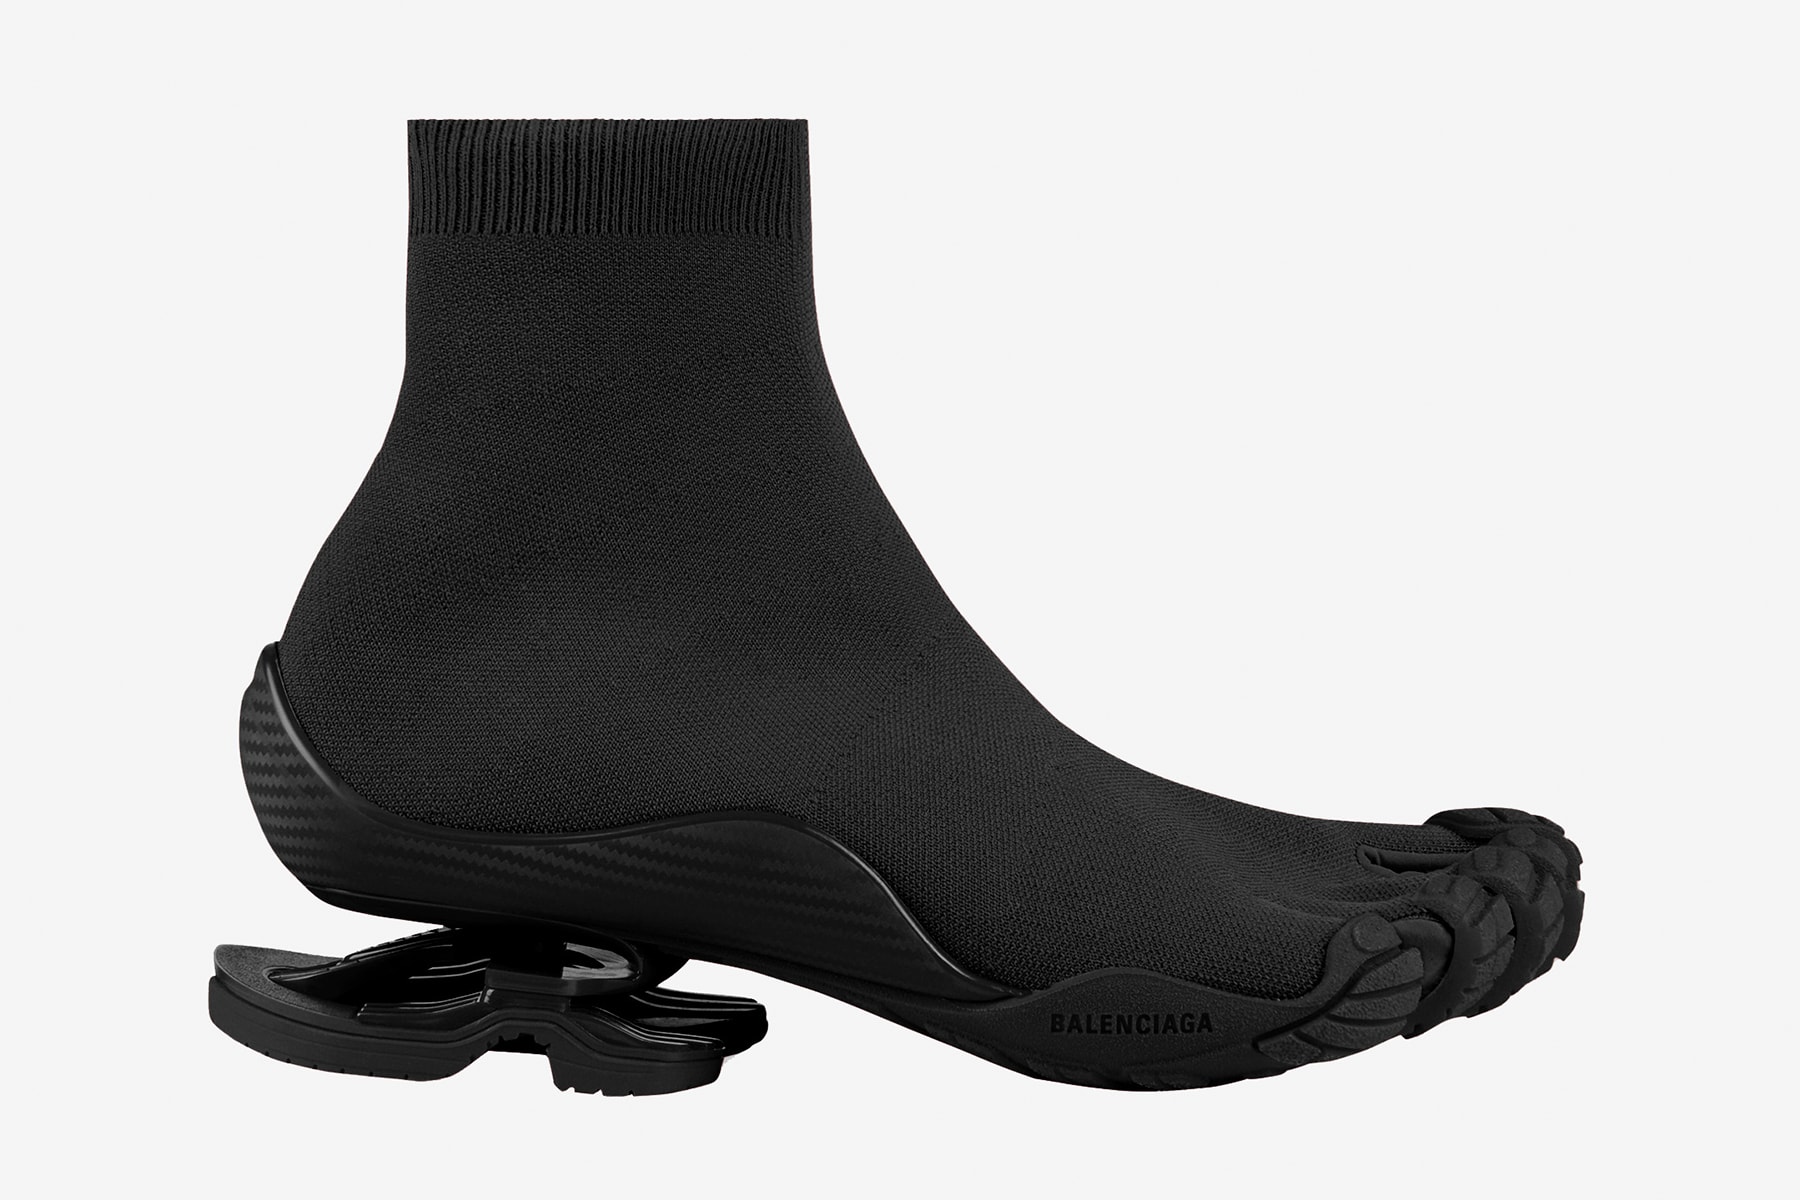 近赏 Balenciaga x Vibram 限量版 Toe 五趾鞋系列